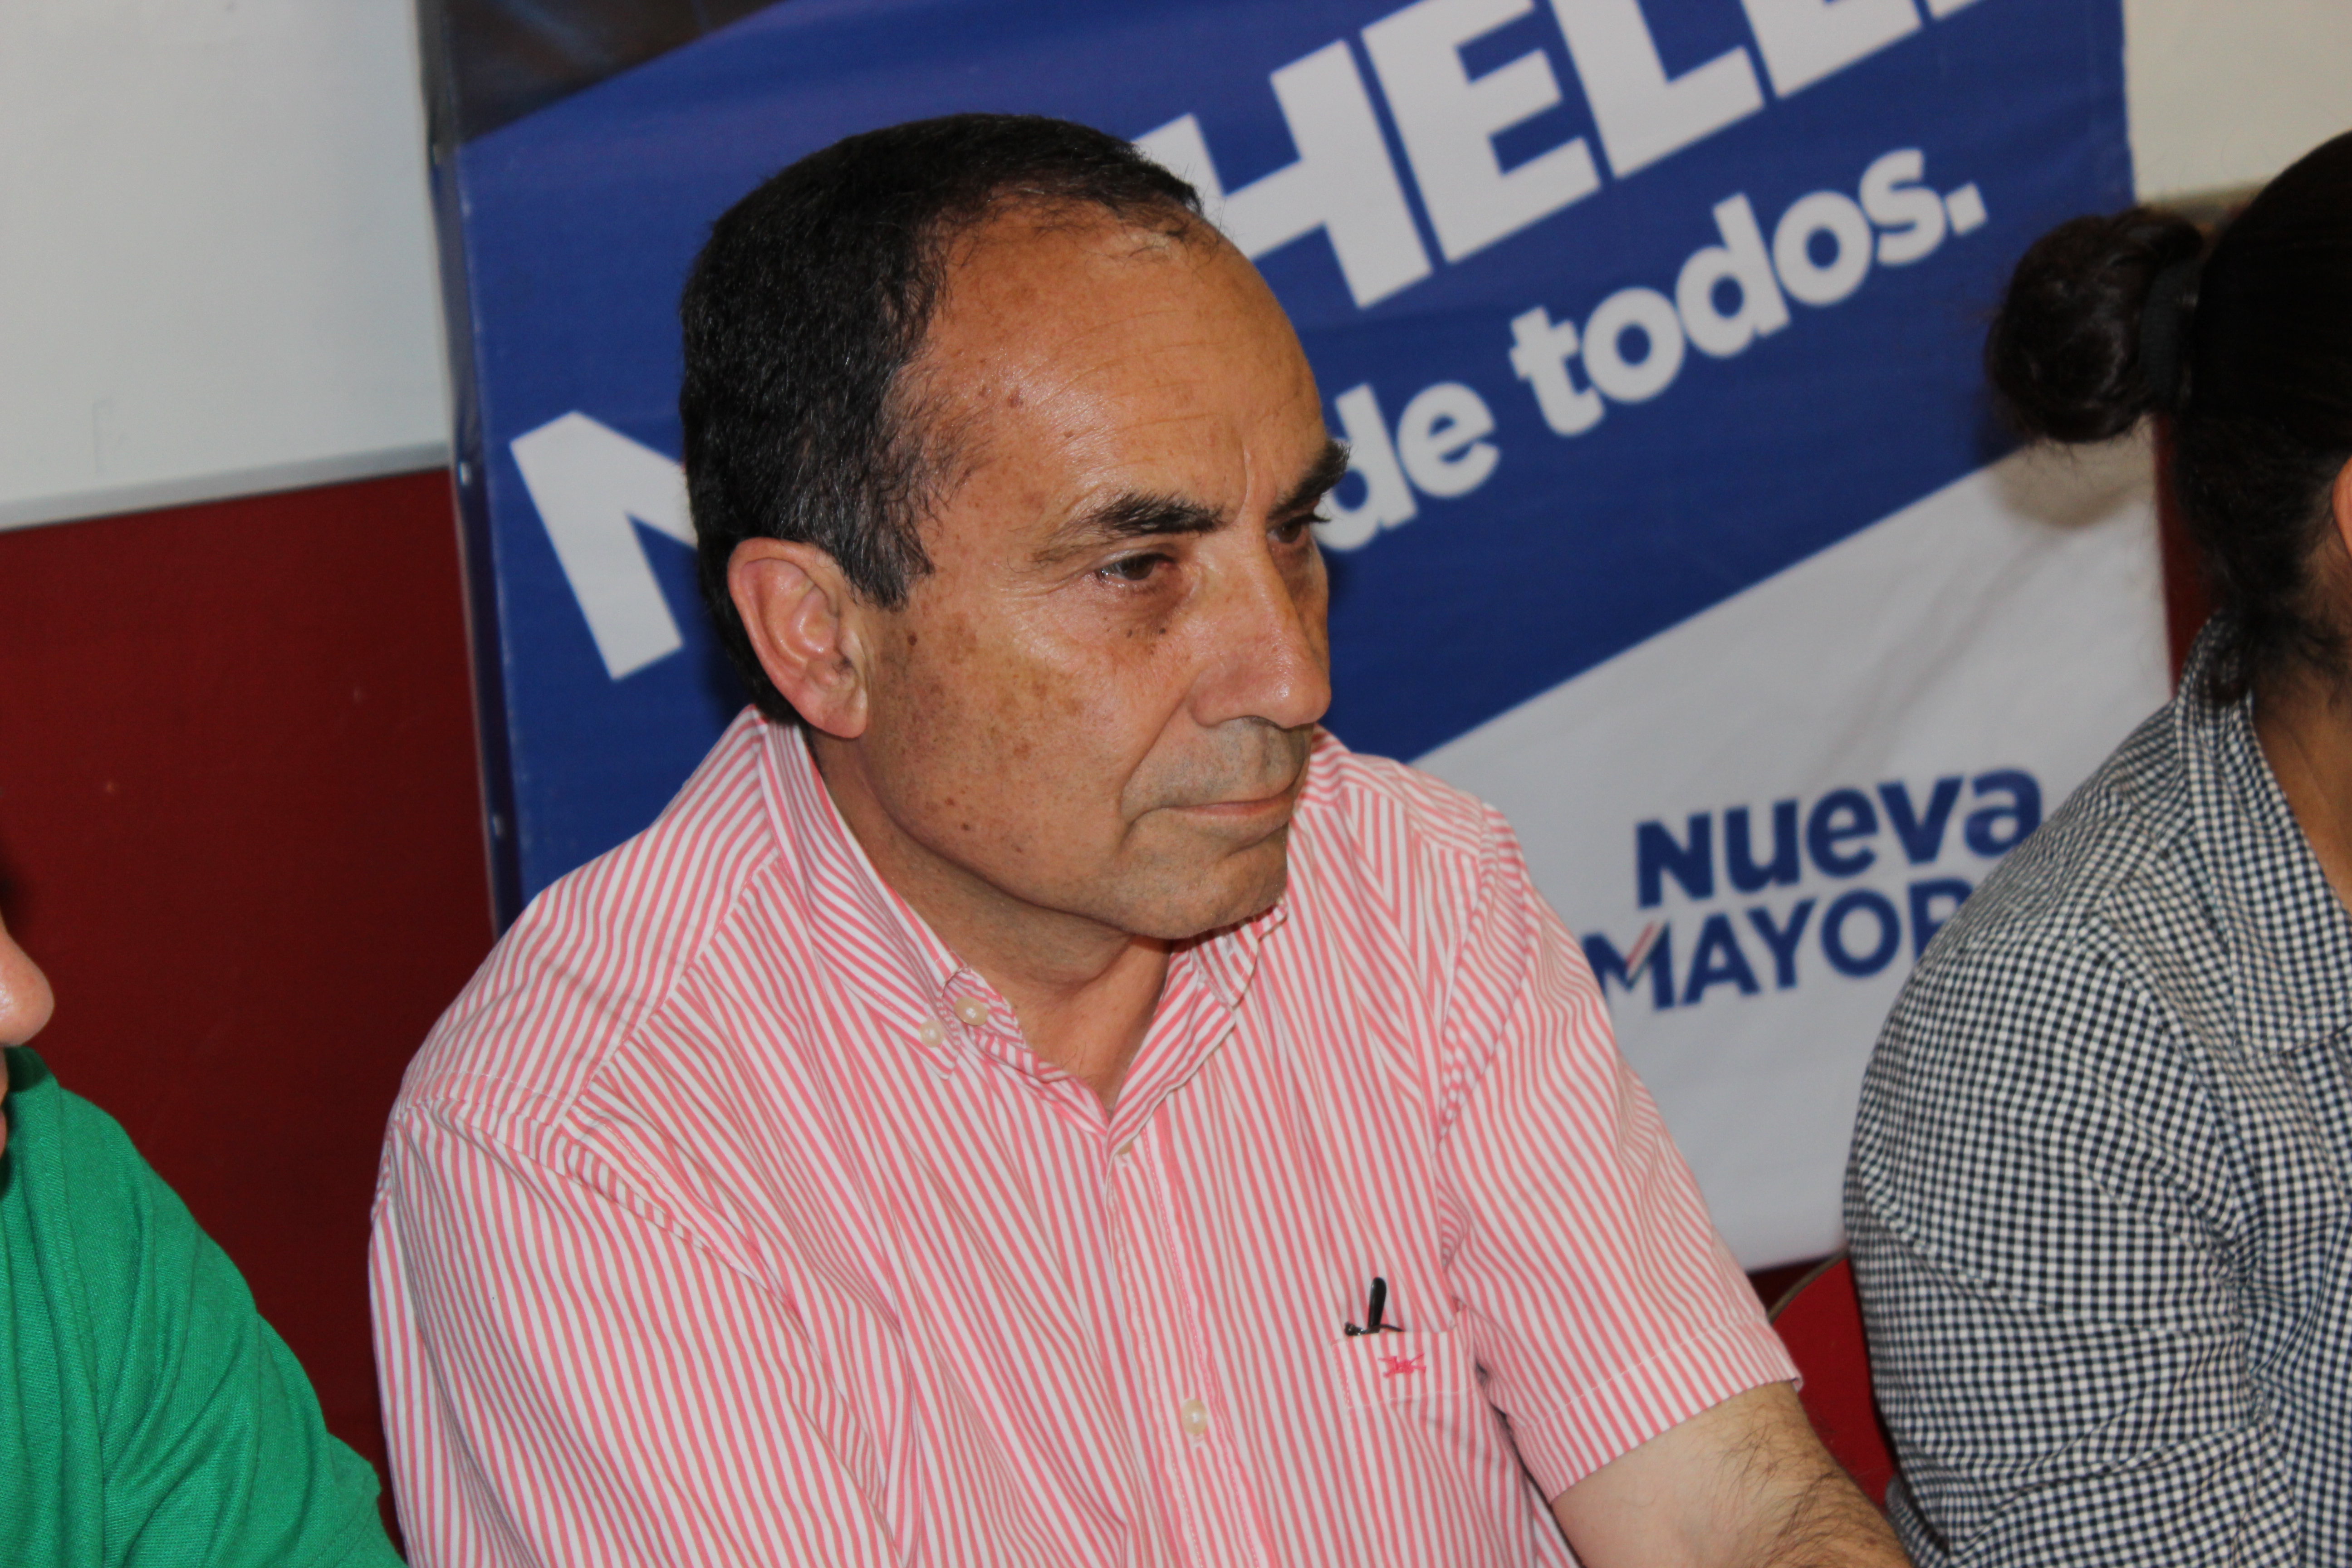 Diputado Robles: “La elección de los gobernadores regionales es uno de los proyecto más importante de este Gobierno”